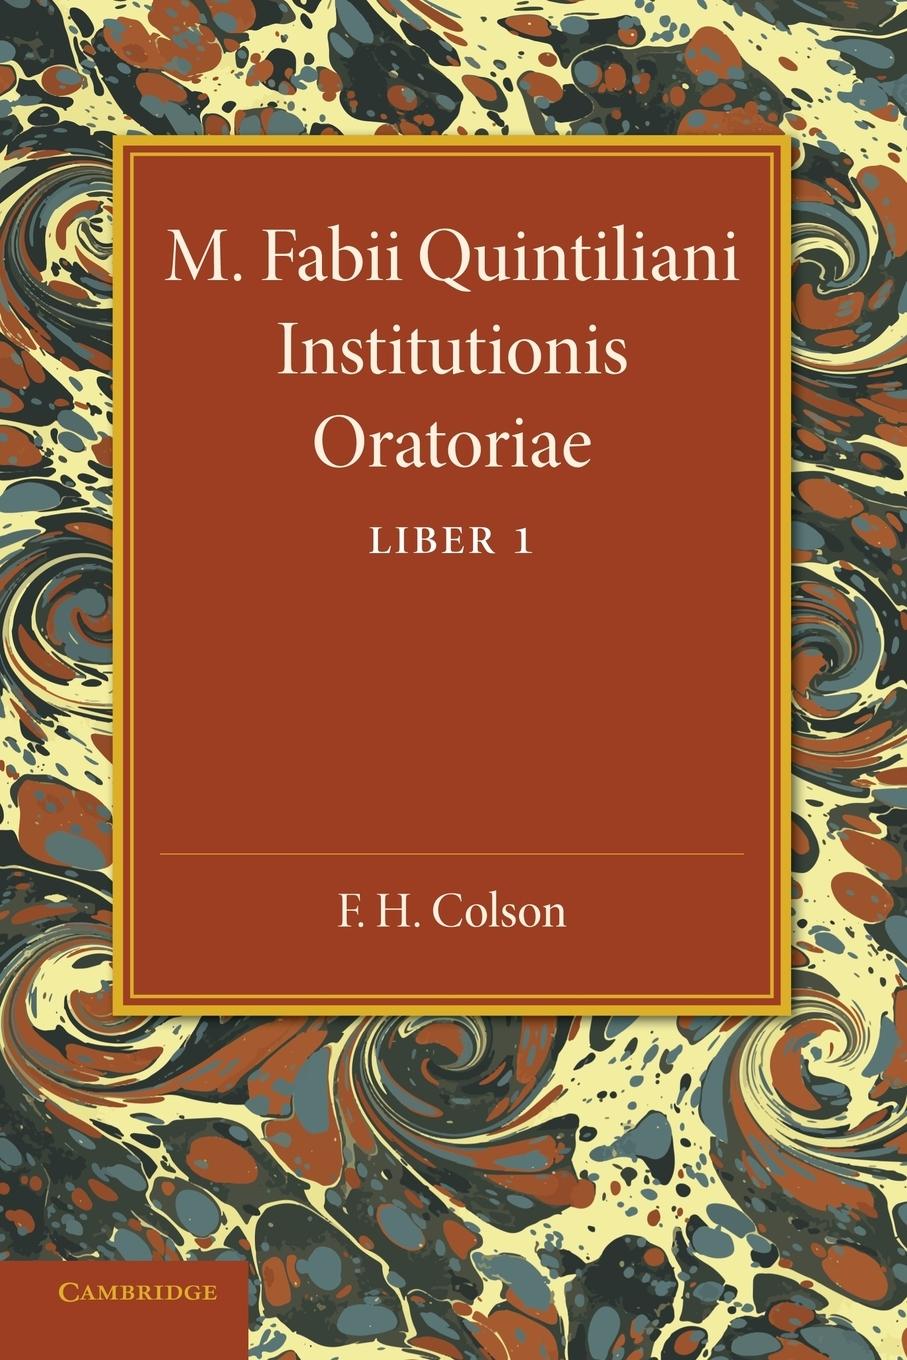 M. Fabii Quintiliani Institutionis Oratoriae Liber I - Colson, F. H.